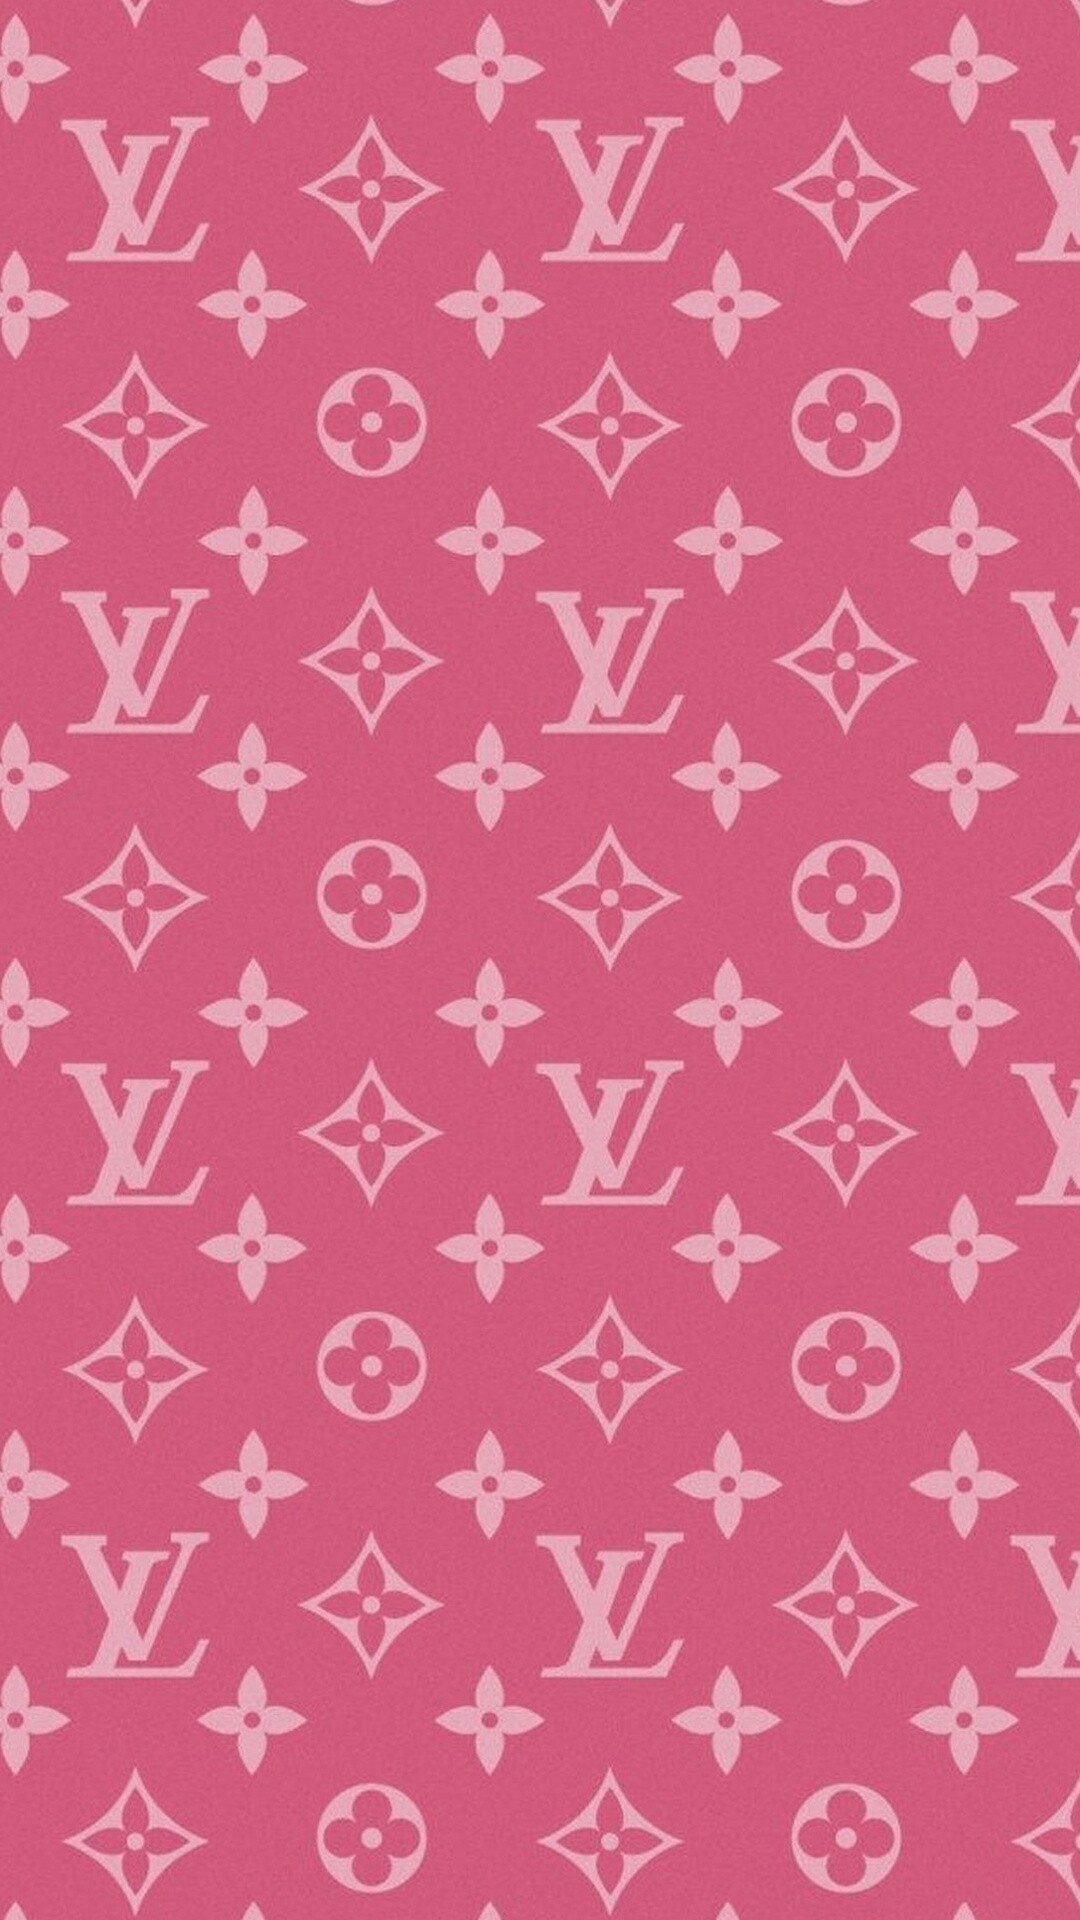 1080x1920 Louis Vuitton pink. Pink WallpaperWallpaper DesignsWallpaper  BackgroundsIphone ...